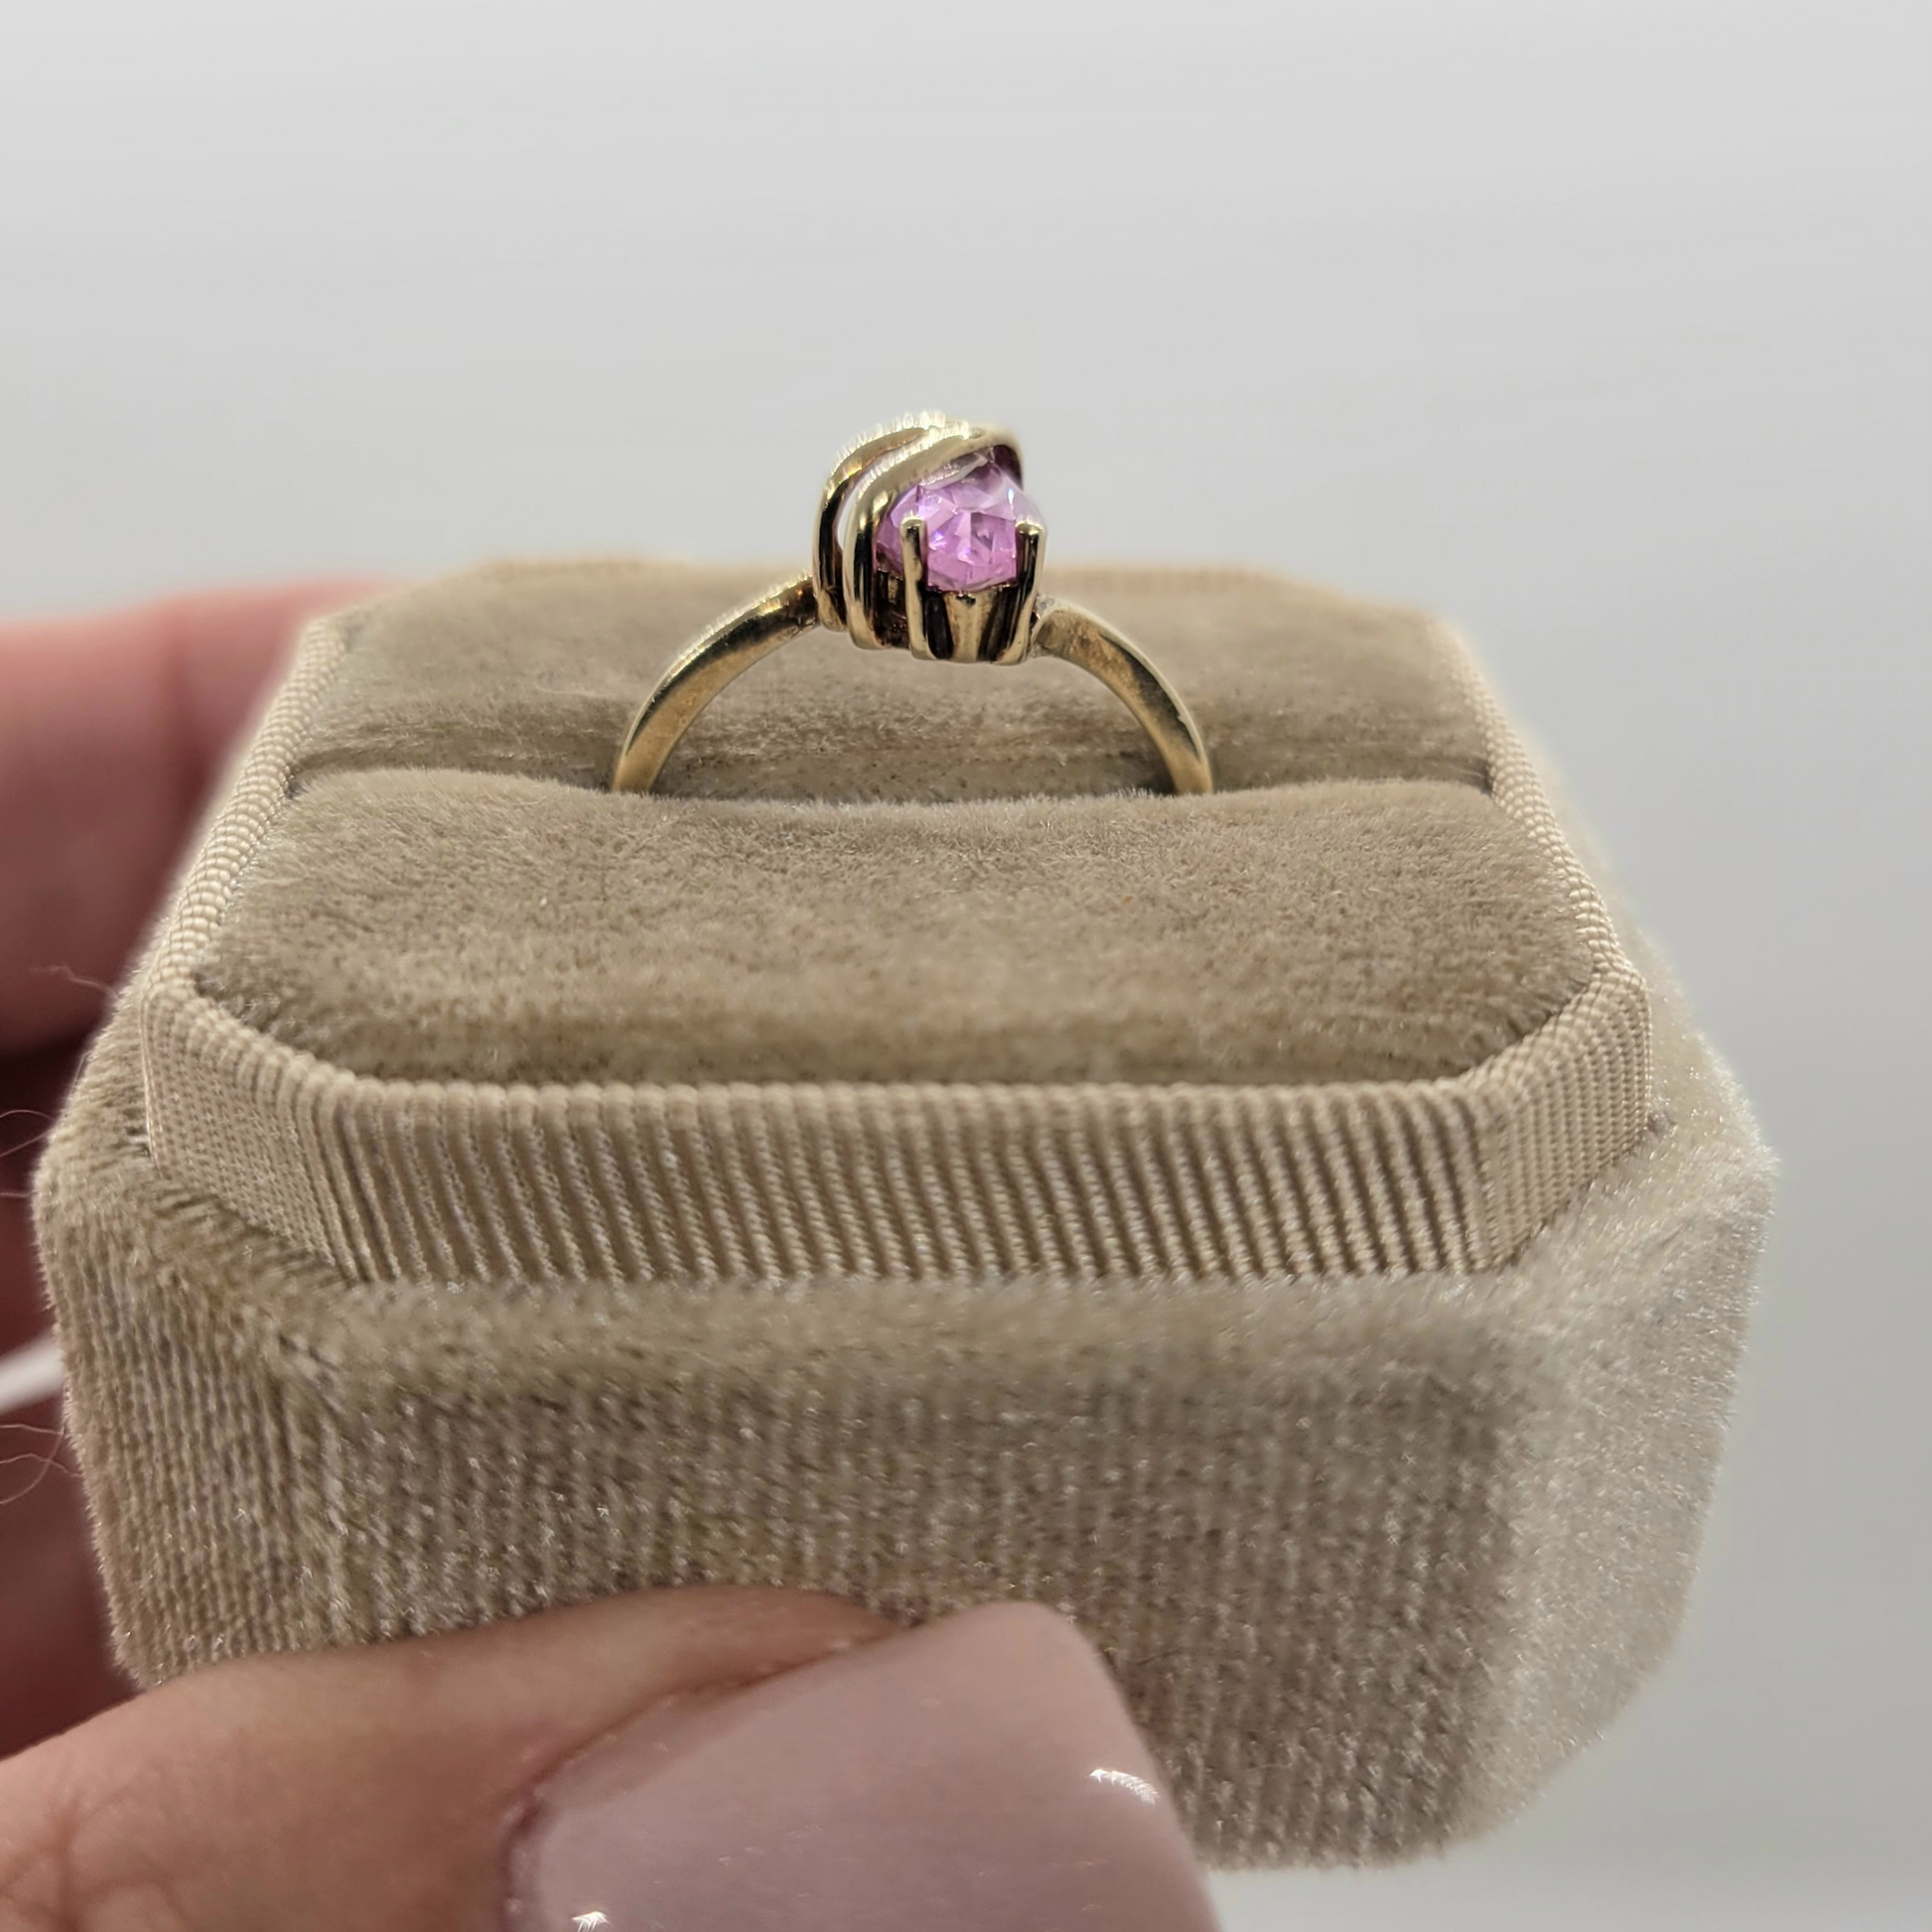 Vintage Pink Topaz 10K Yellow Gold Ring